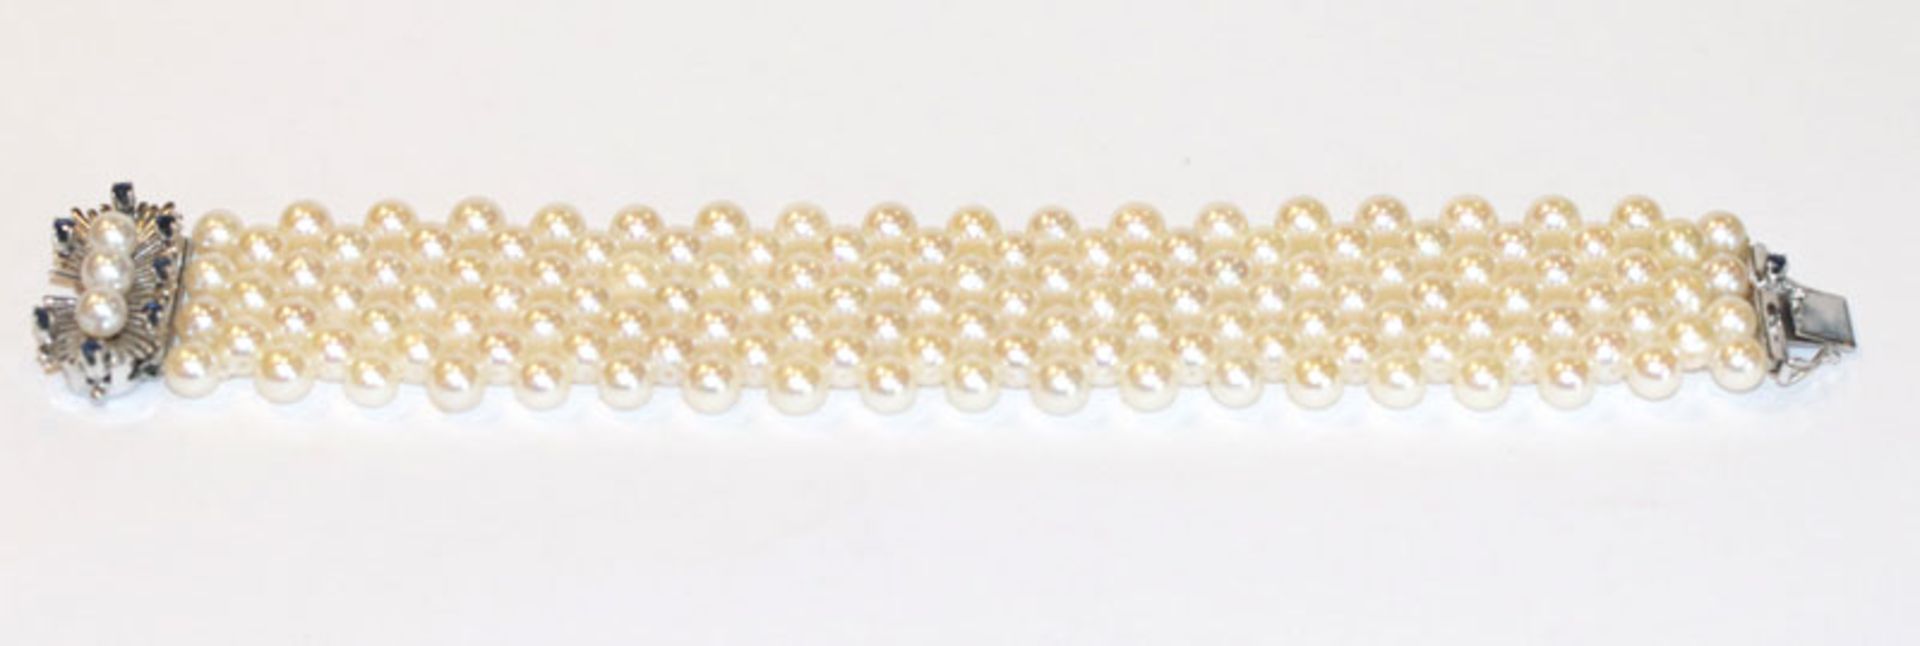 Perlen-Armband mit 14 k Weißgold-Schließe, besetzt mit 8 Safiren und 3 Perlen, L 18,5 cm, B 3 cm